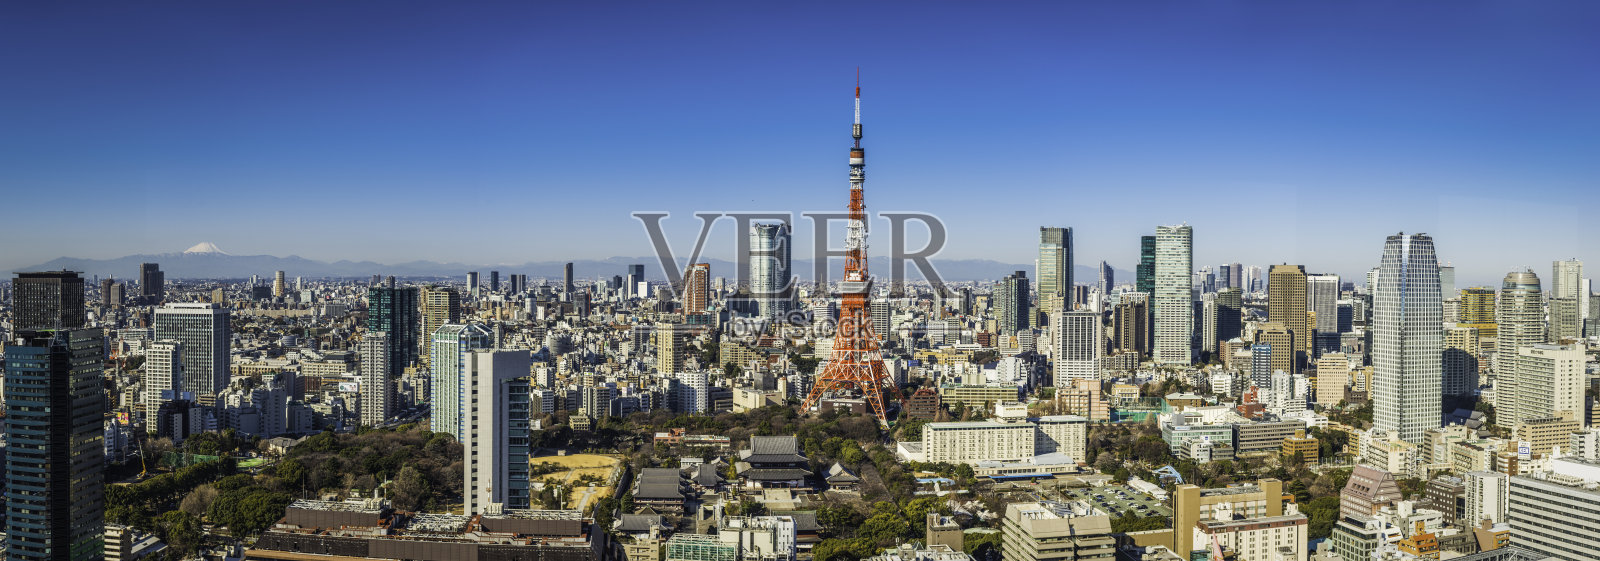 东京塔富士山和六本木摩天大楼挤满了日本的城市景观照片摄影图片